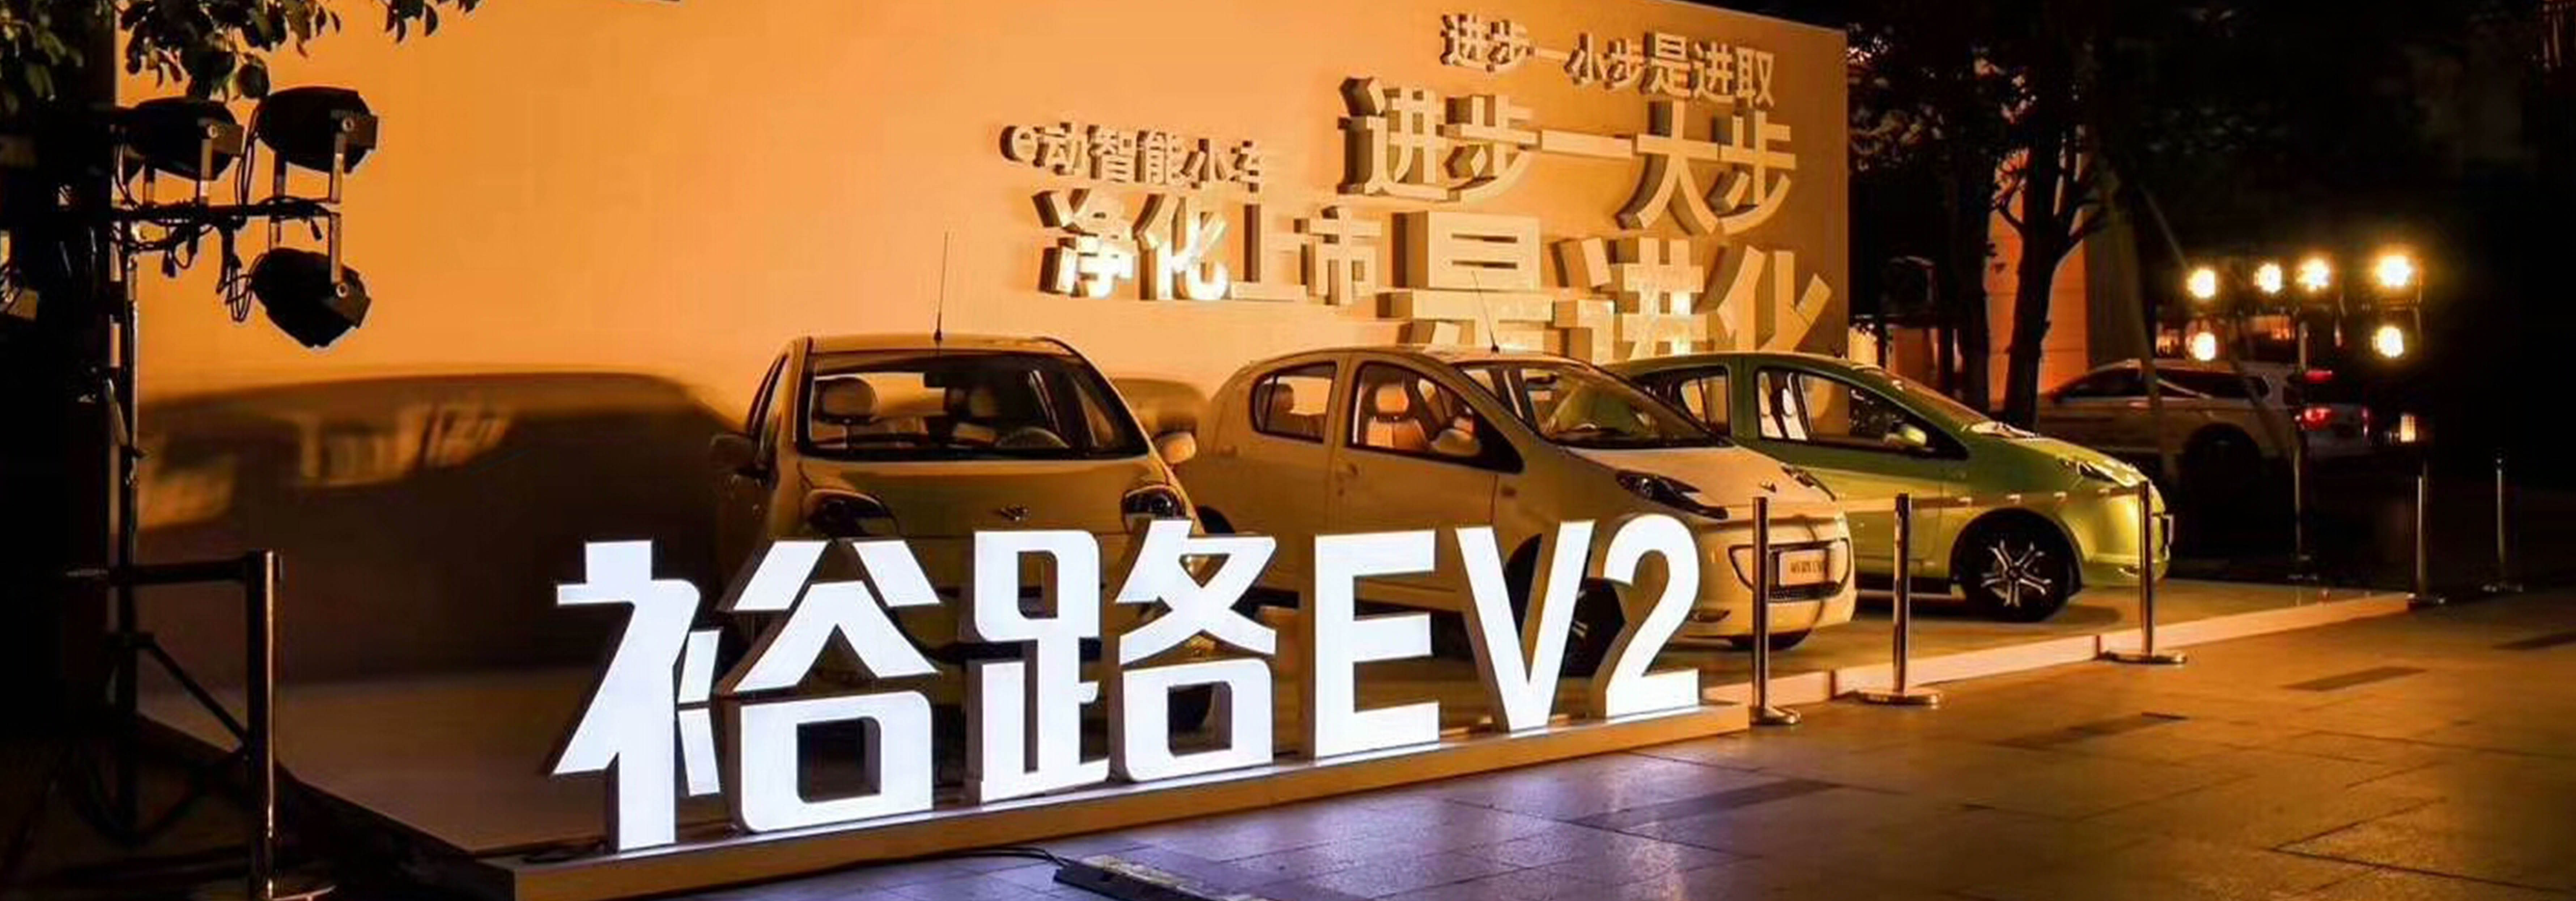 东风裕隆旗下裕路品牌  VIS  SI 设计